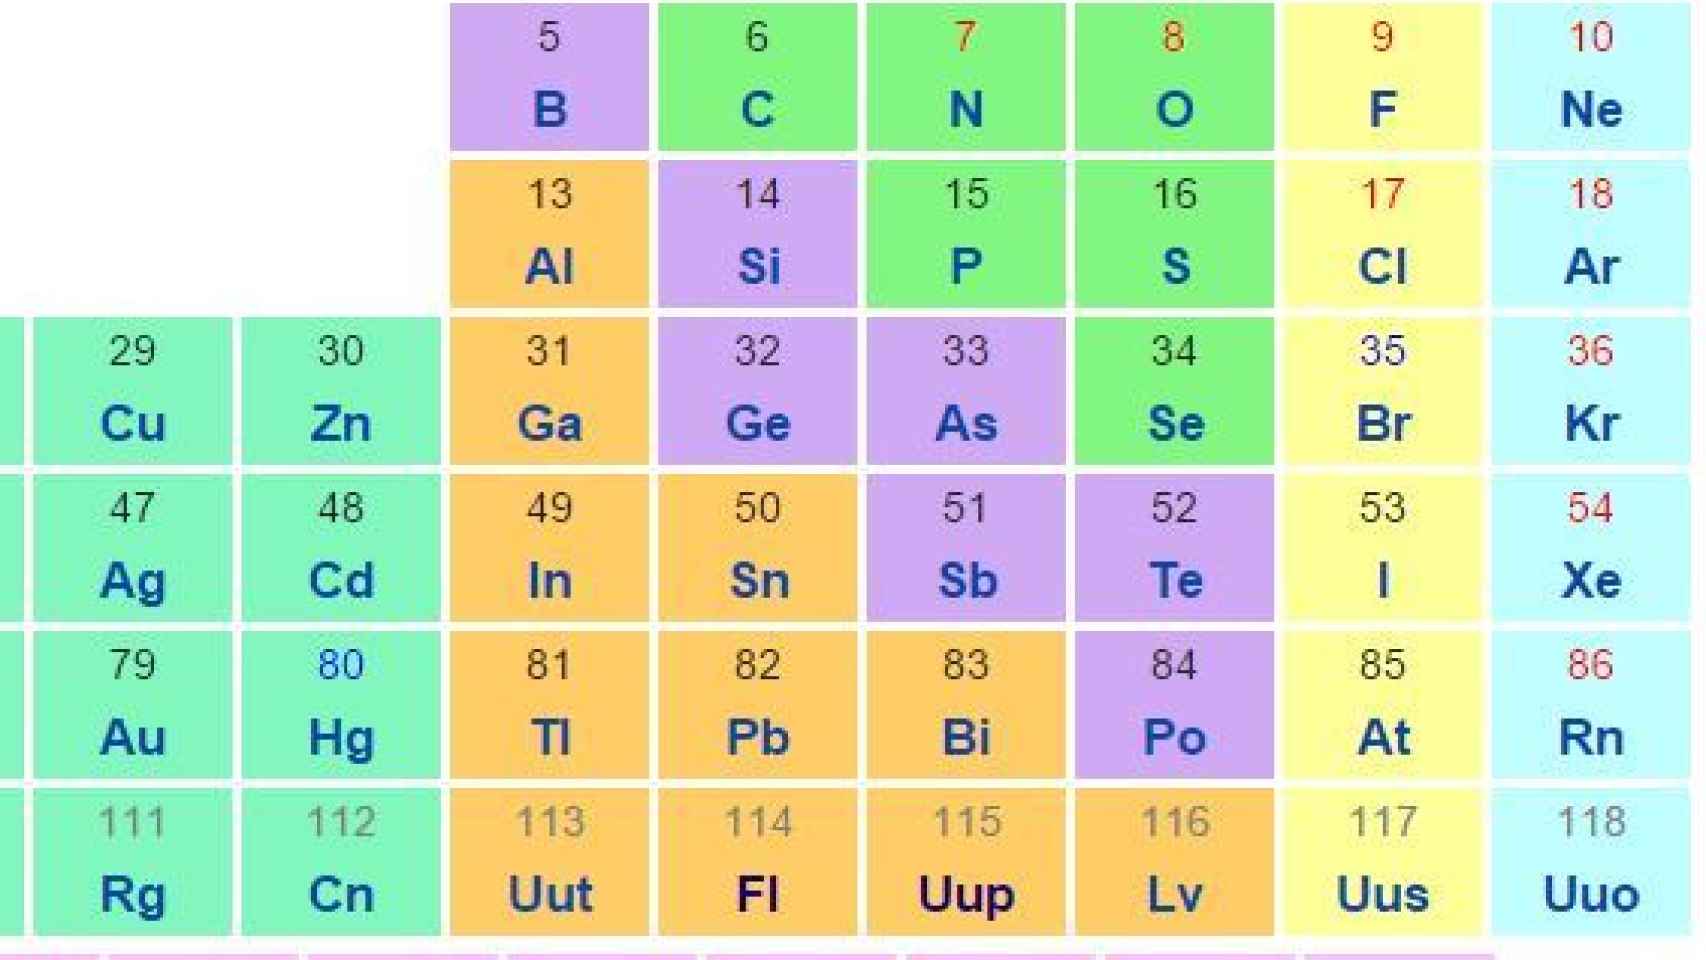 Los nuevos elementos ya aparecen en algunas versiones de la tabla.